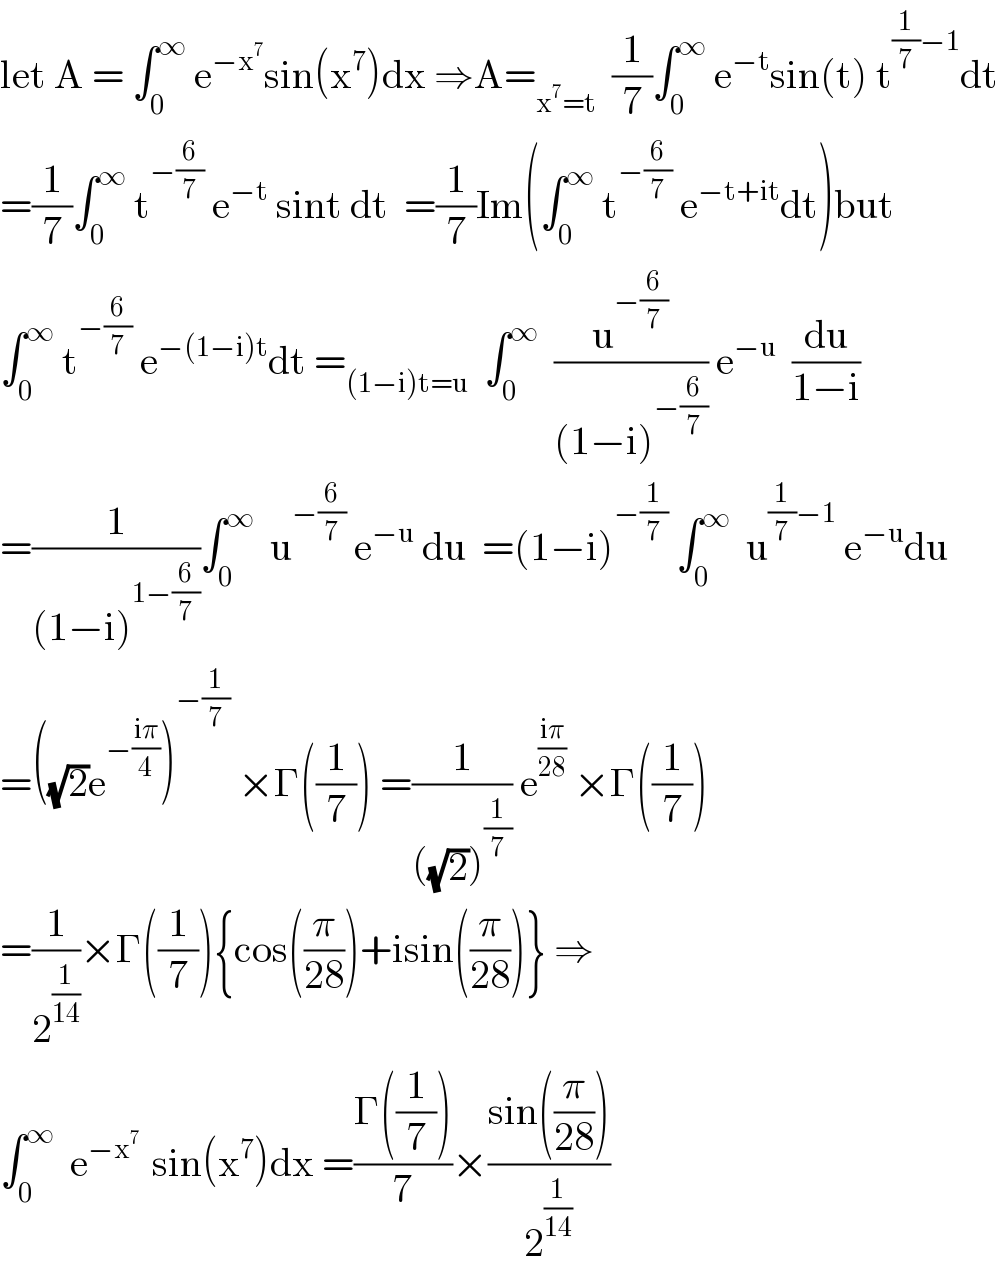 let A = ∫_0 ^∞  e^(−x^7 ) sin(x^7 )dx ⇒A=_(x^7 =t)   (1/7)∫_0 ^∞  e^(−t) sin(t) t^((1/7)−1) dt  =(1/7)∫_0 ^∞  t^(−(6/7))  e^(−t)  sint dt  =(1/7)Im(∫_0 ^∞  t^(−(6/7))  e^(−t+it) dt)but  ∫_0 ^∞  t^(−(6/7))  e^(−(1−i)t) dt =_((1−i)t=u)   ∫_0 ^∞   (u^(−(6/7)) /((1−i)^(−(6/7)) )) e^(−u)   (du/(1−i))  =(1/((1−i)^(1−(6/7)) ))∫_0 ^∞   u^(−(6/7))  e^(−u)  du  =(1−i)^(−(1/7))  ∫_0 ^∞   u^((1/7)−1)  e^(−u) du  =((√2)e^(−((iπ)/4)) )^(−(1/7))  ×Γ((1/7)) =(1/(((√2))^(1/7) )) e^((iπ)/(28))  ×Γ((1/7))  =(1/2^(1/(14)) )×Γ((1/7)){cos((π/(28)))+isin((π/(28)))} ⇒  ∫_0 ^∞   e^(−x^7  )  sin(x^7 )dx =((Γ((1/7)))/7)×((sin((π/(28))))/2^(1/(14)) )  